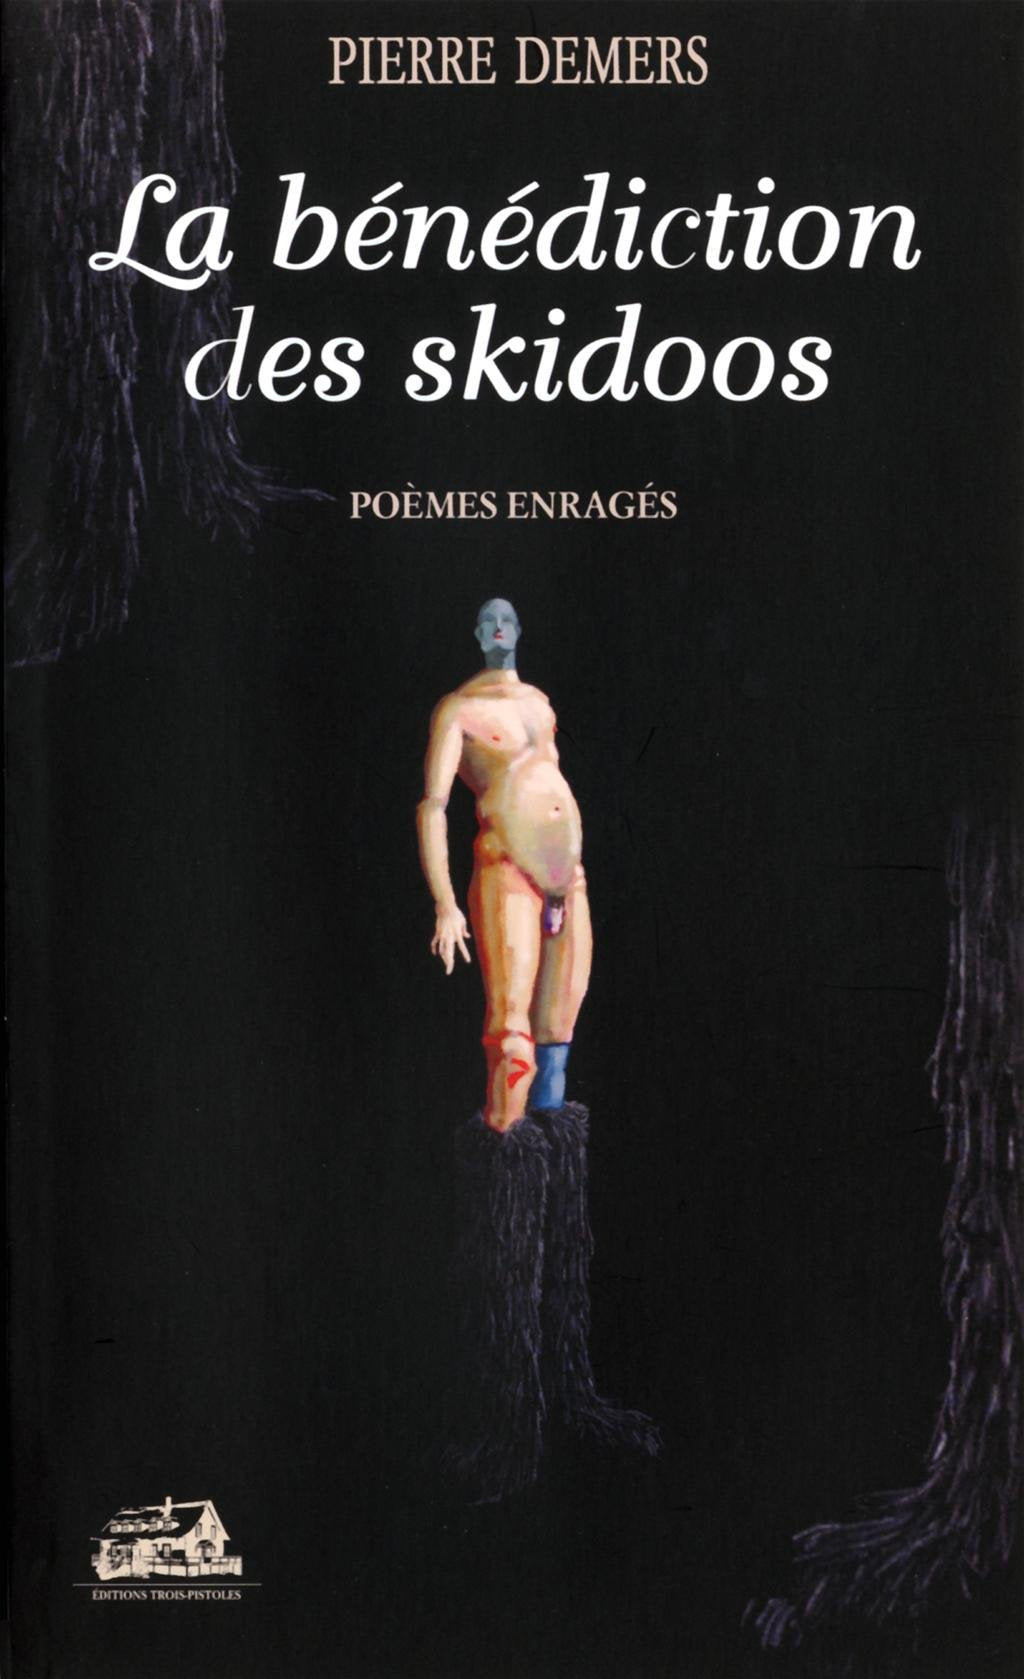 Livre ISBN 2895832145 La bénédiction des skidoos : poèmes enragés (Pierre Demers)